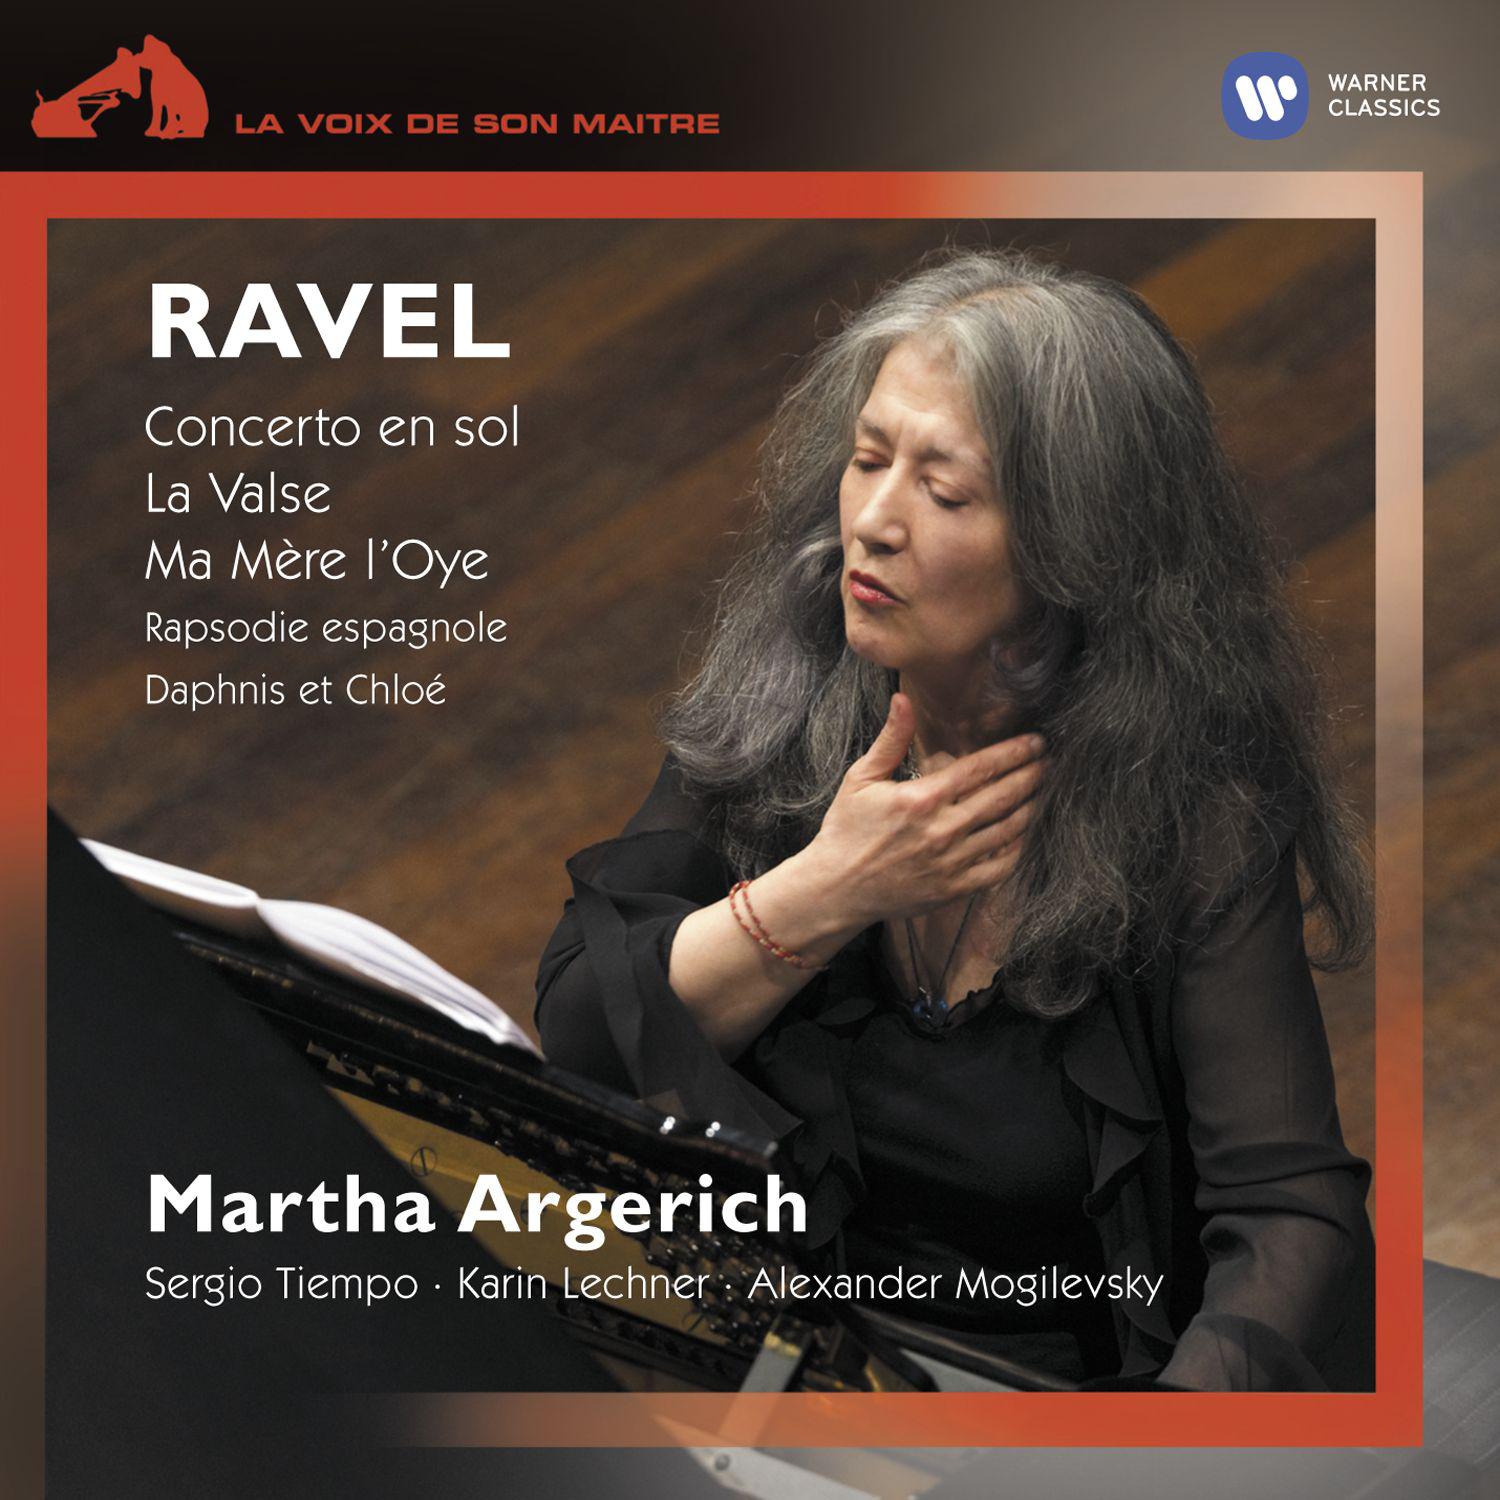 Ravel: Concerto en sol  La Valse  Ma me re l' Oye  Rapsodie espagnole  Suite No. 2 from Daphnis et Chloe